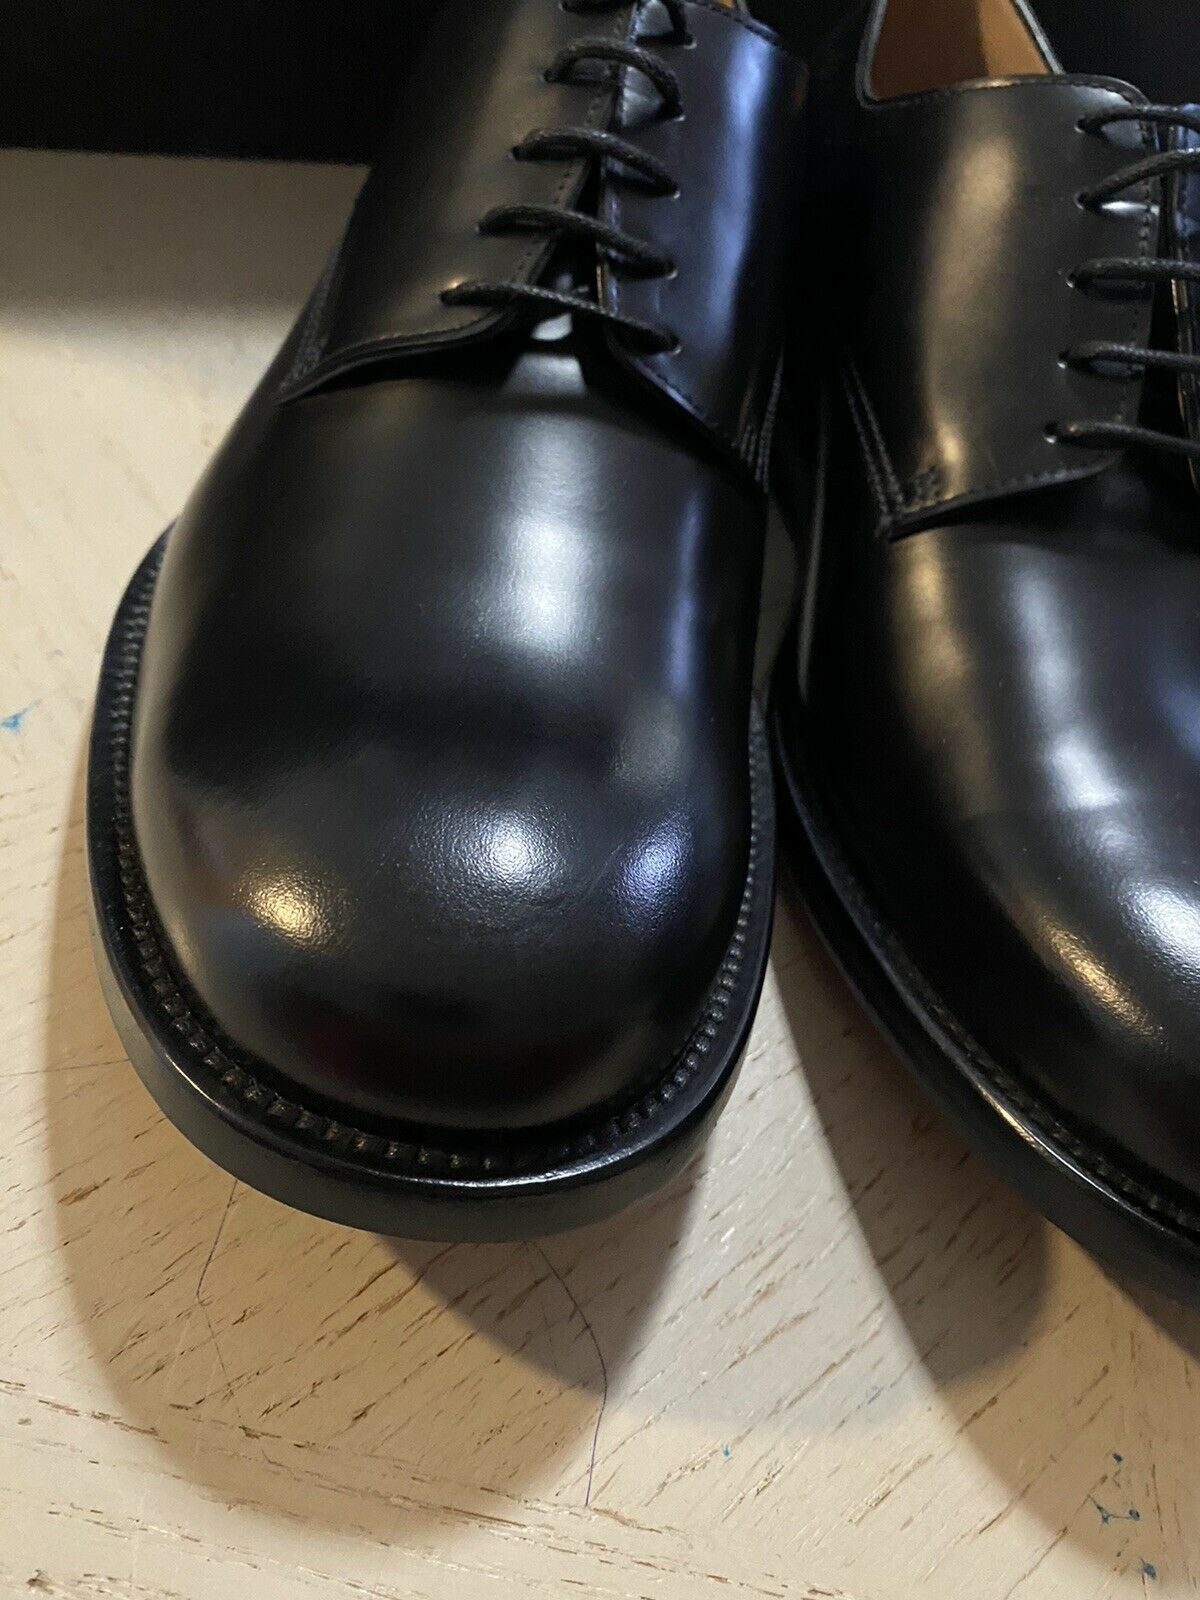 NIB $840 Bottega Veneta Men Leather Dress Shoes Black 12 US/45 Eu Italy